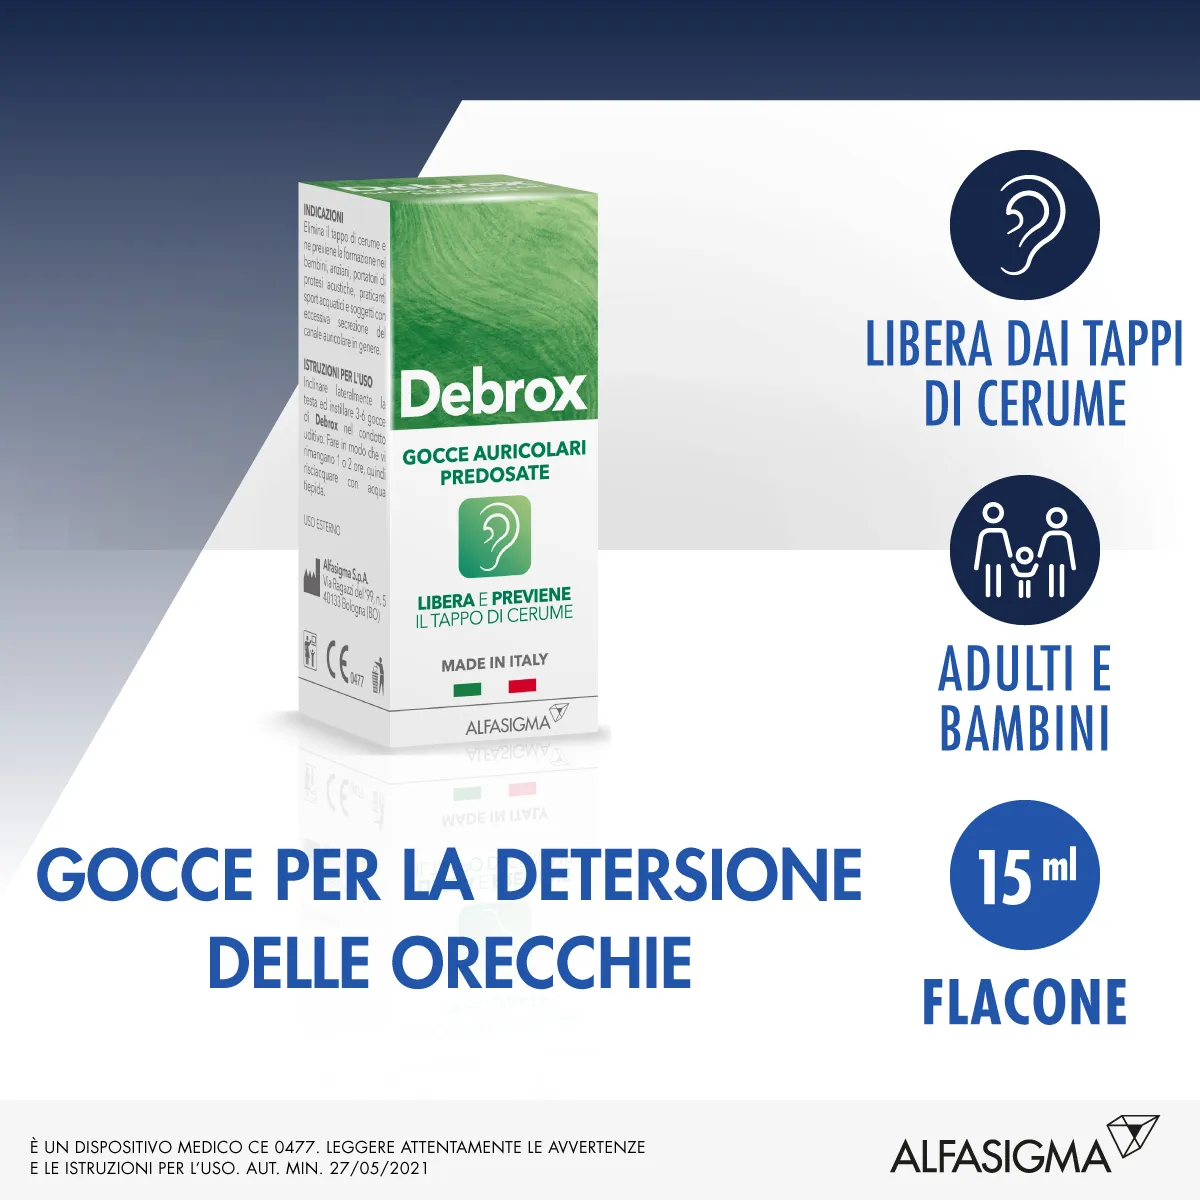 Debrox Gocce Auricolari Predosate 15 ml